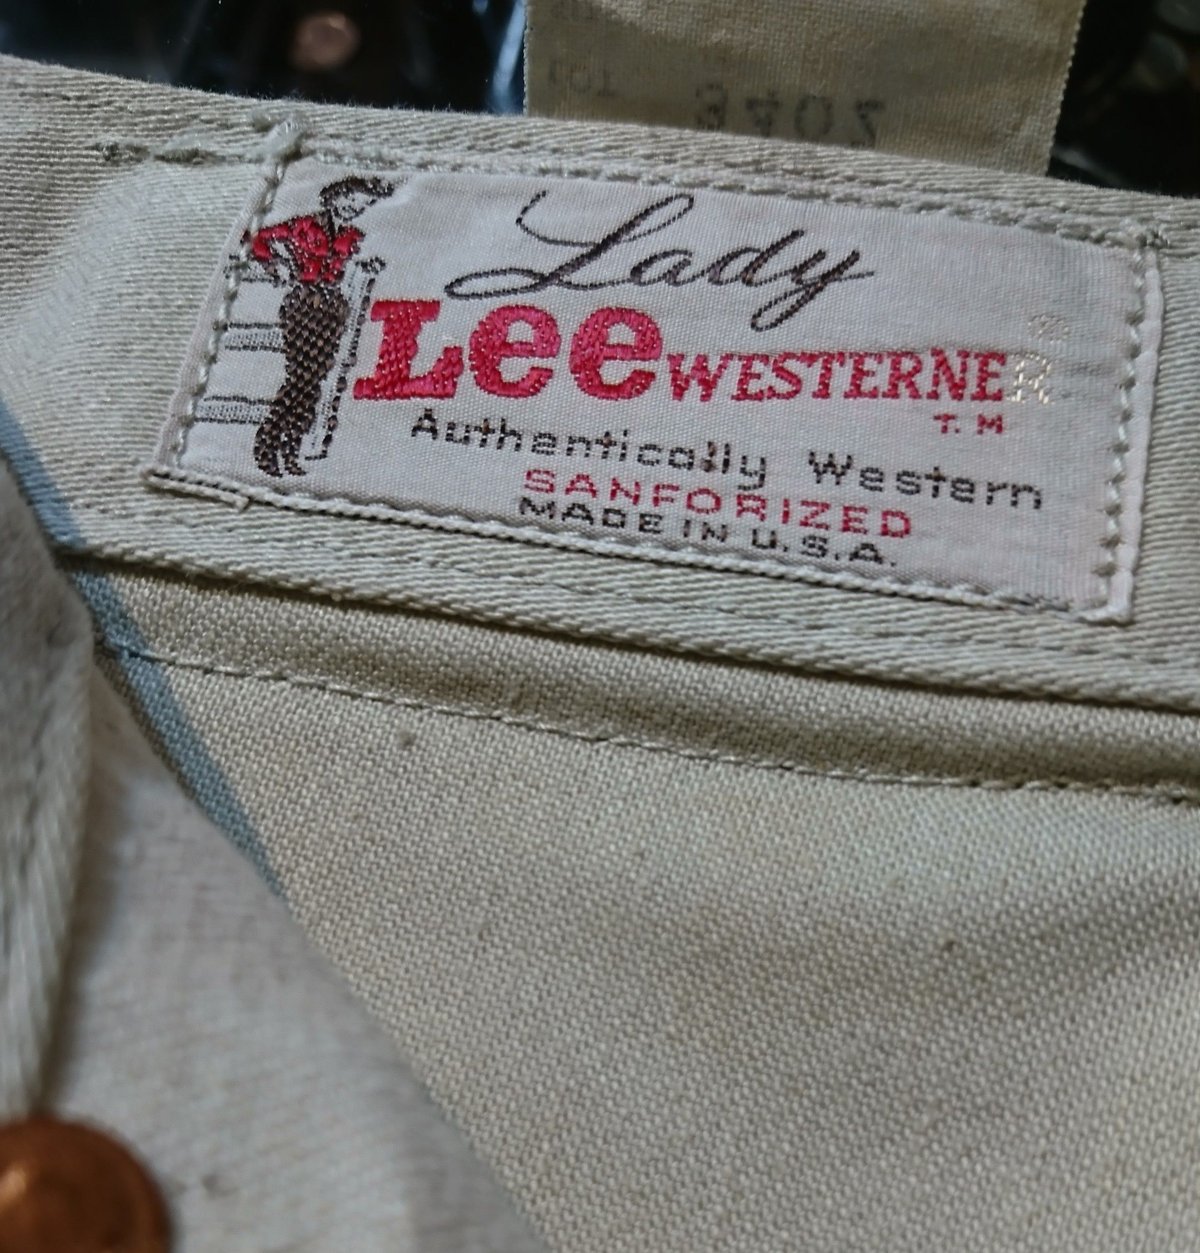 60s vintage lee westerner pants リー ウエスターナー パンツ ...